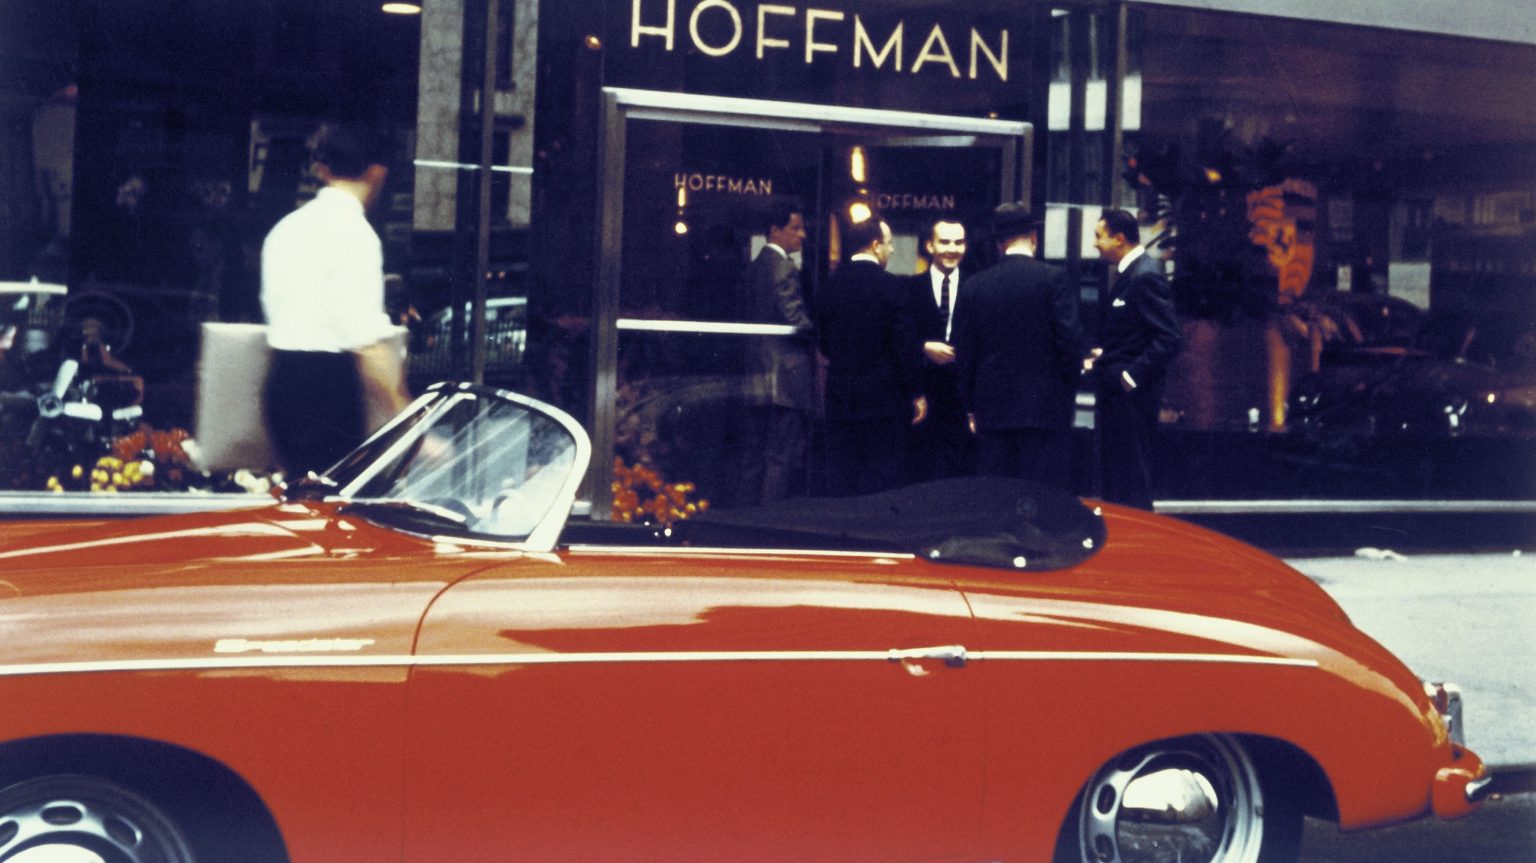 Porsche 356 Speedster, model year 1955, in front of the Hoffman Motor Car Company showroom in New York